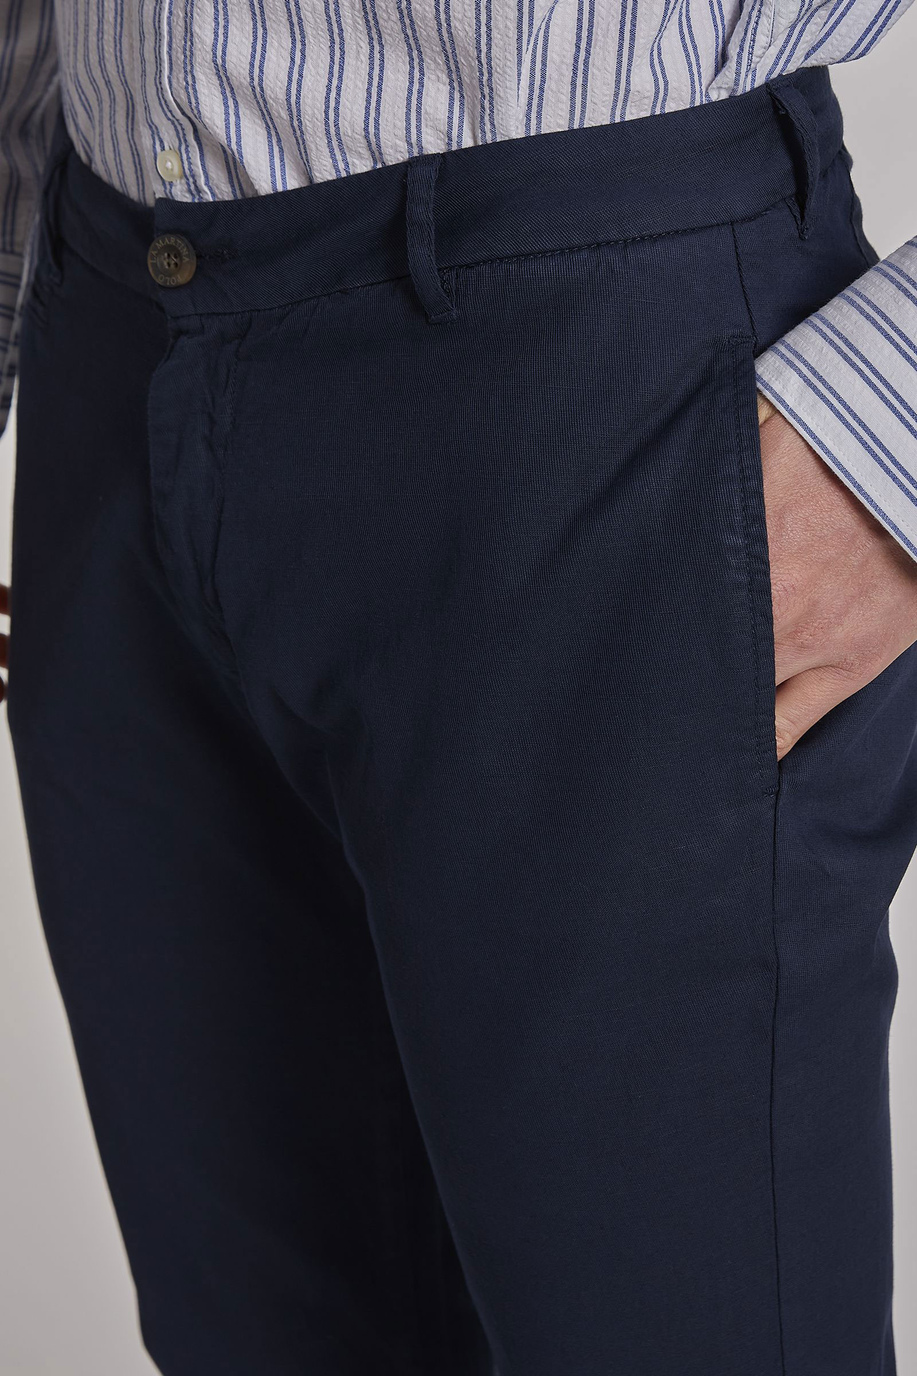 Pantalone da uomo in cotone misto lino regular fit